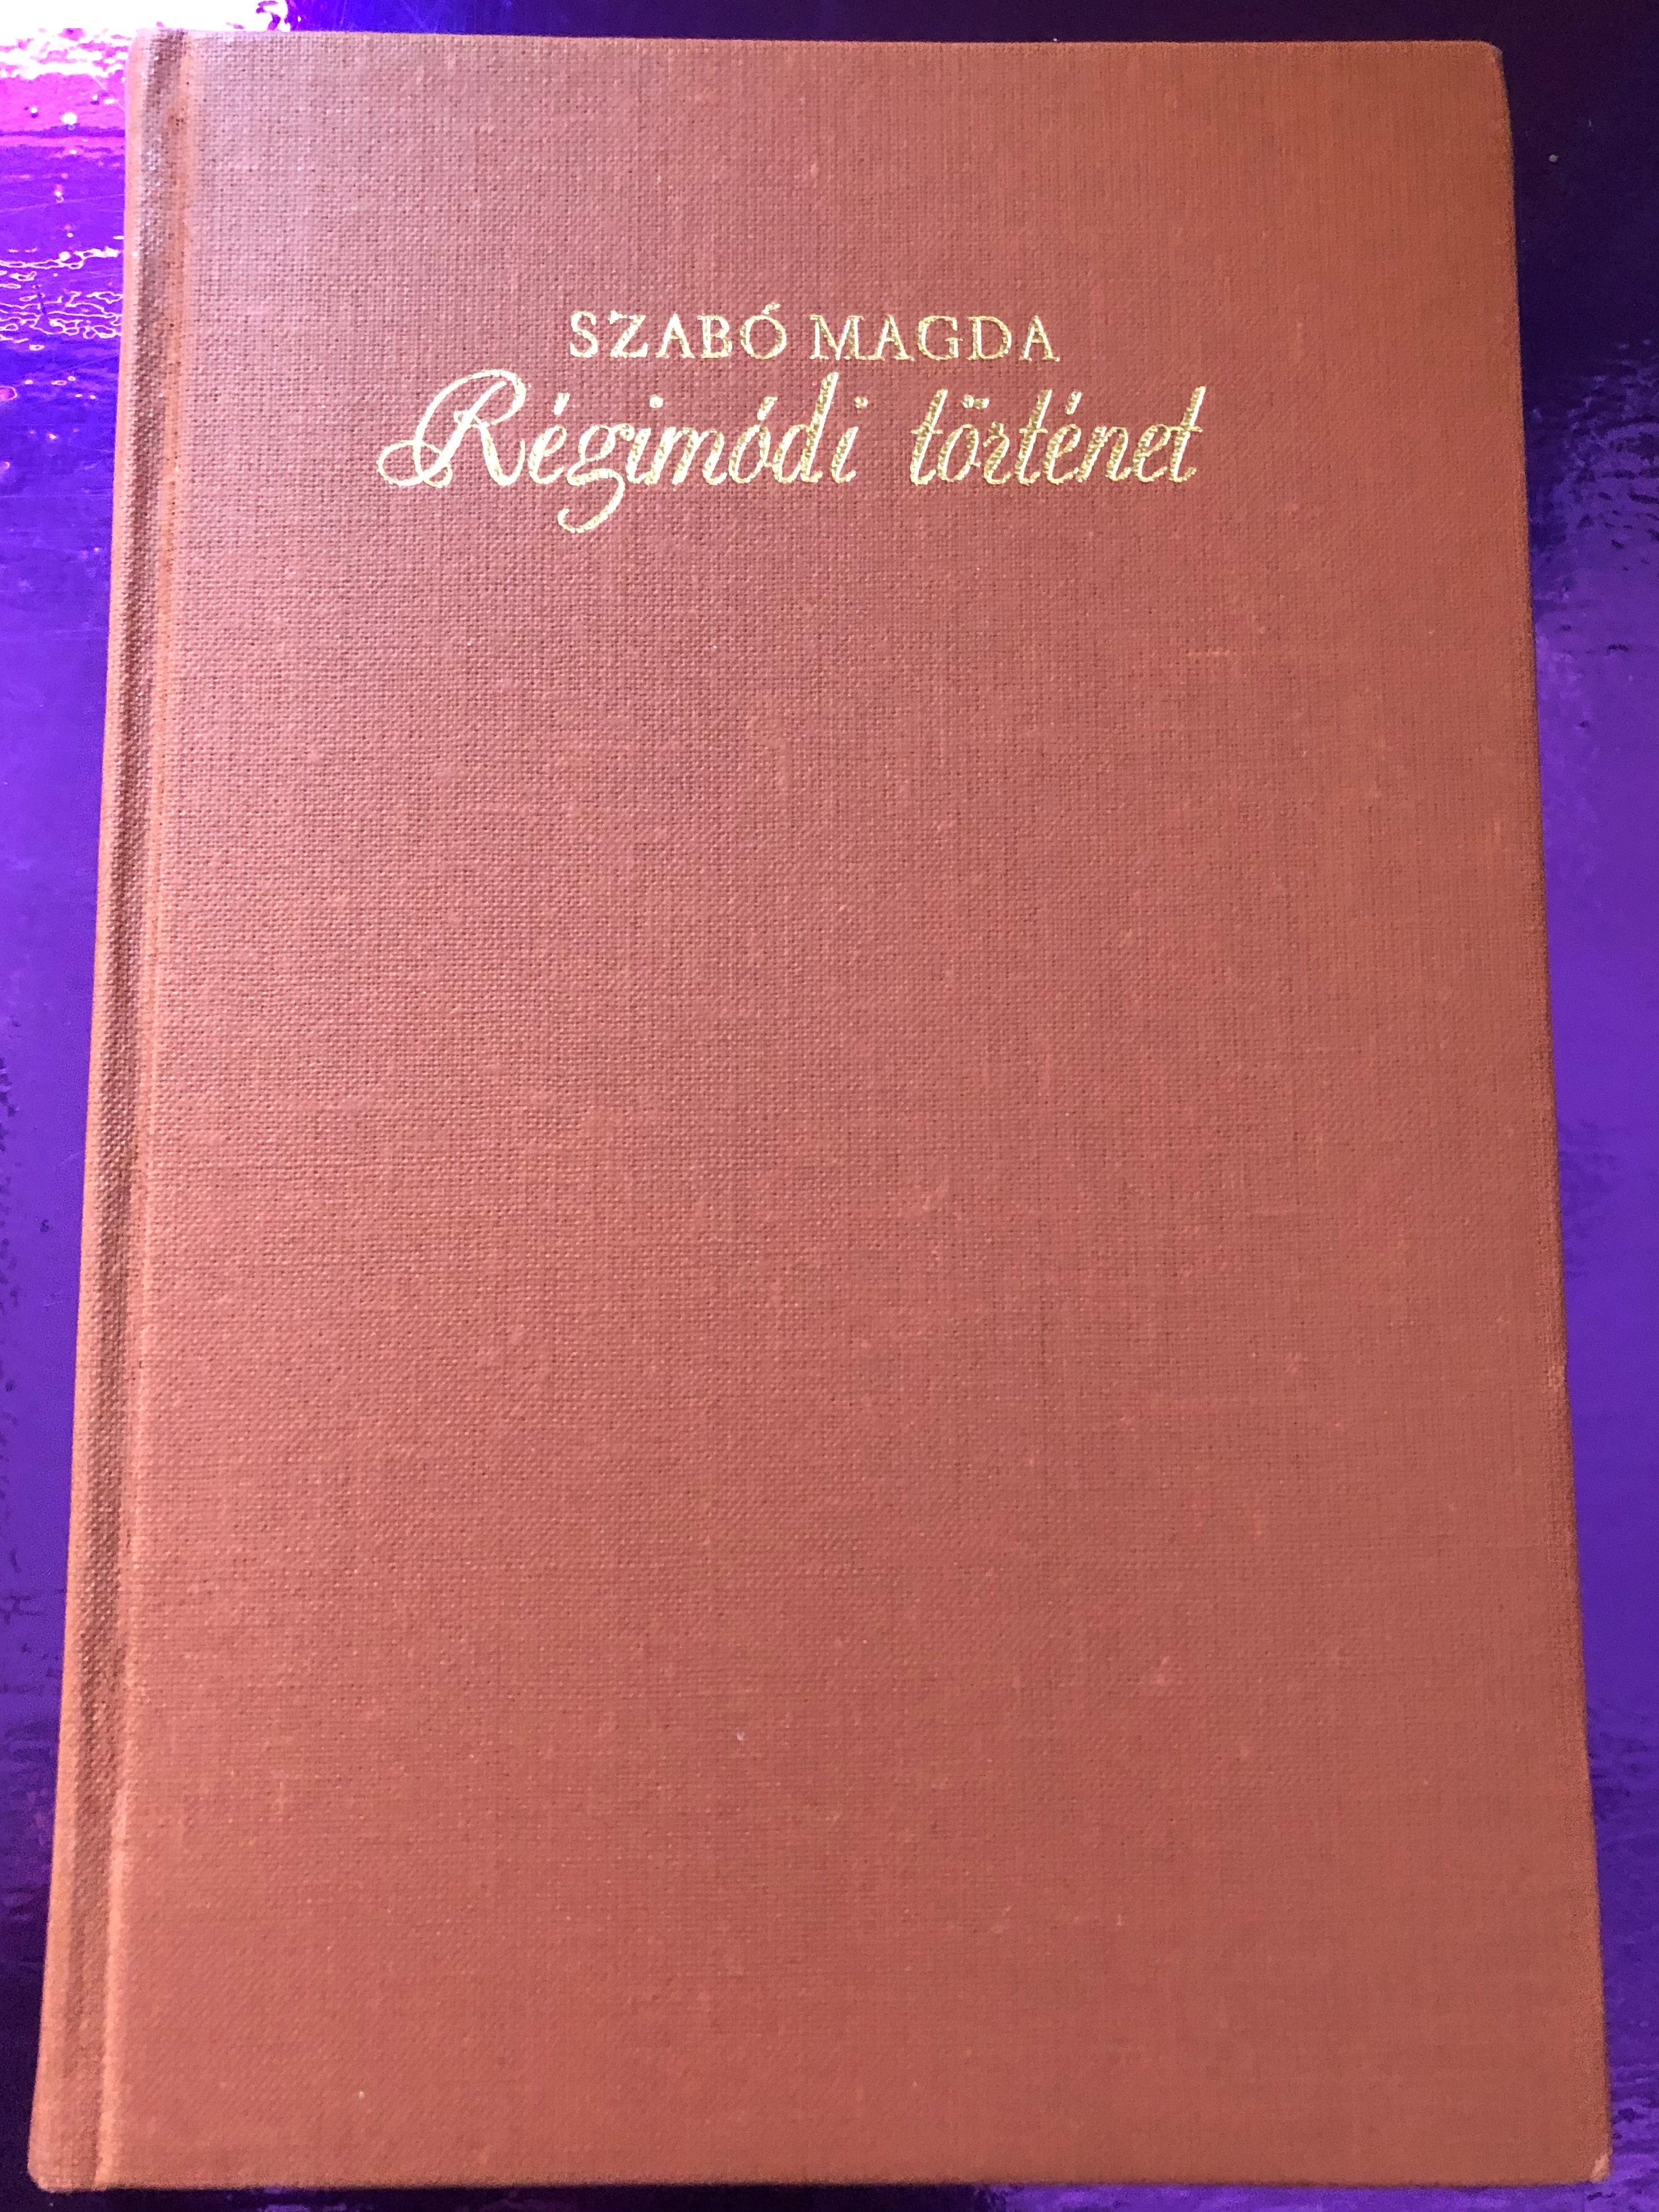 Régimódi történet by Szabó Magda / Szépirodalmi könyvkiadó Budapest 1977 /  Hardcover / Hungarian Novel - "Old-fashioned Story" - bibleinmylanguage